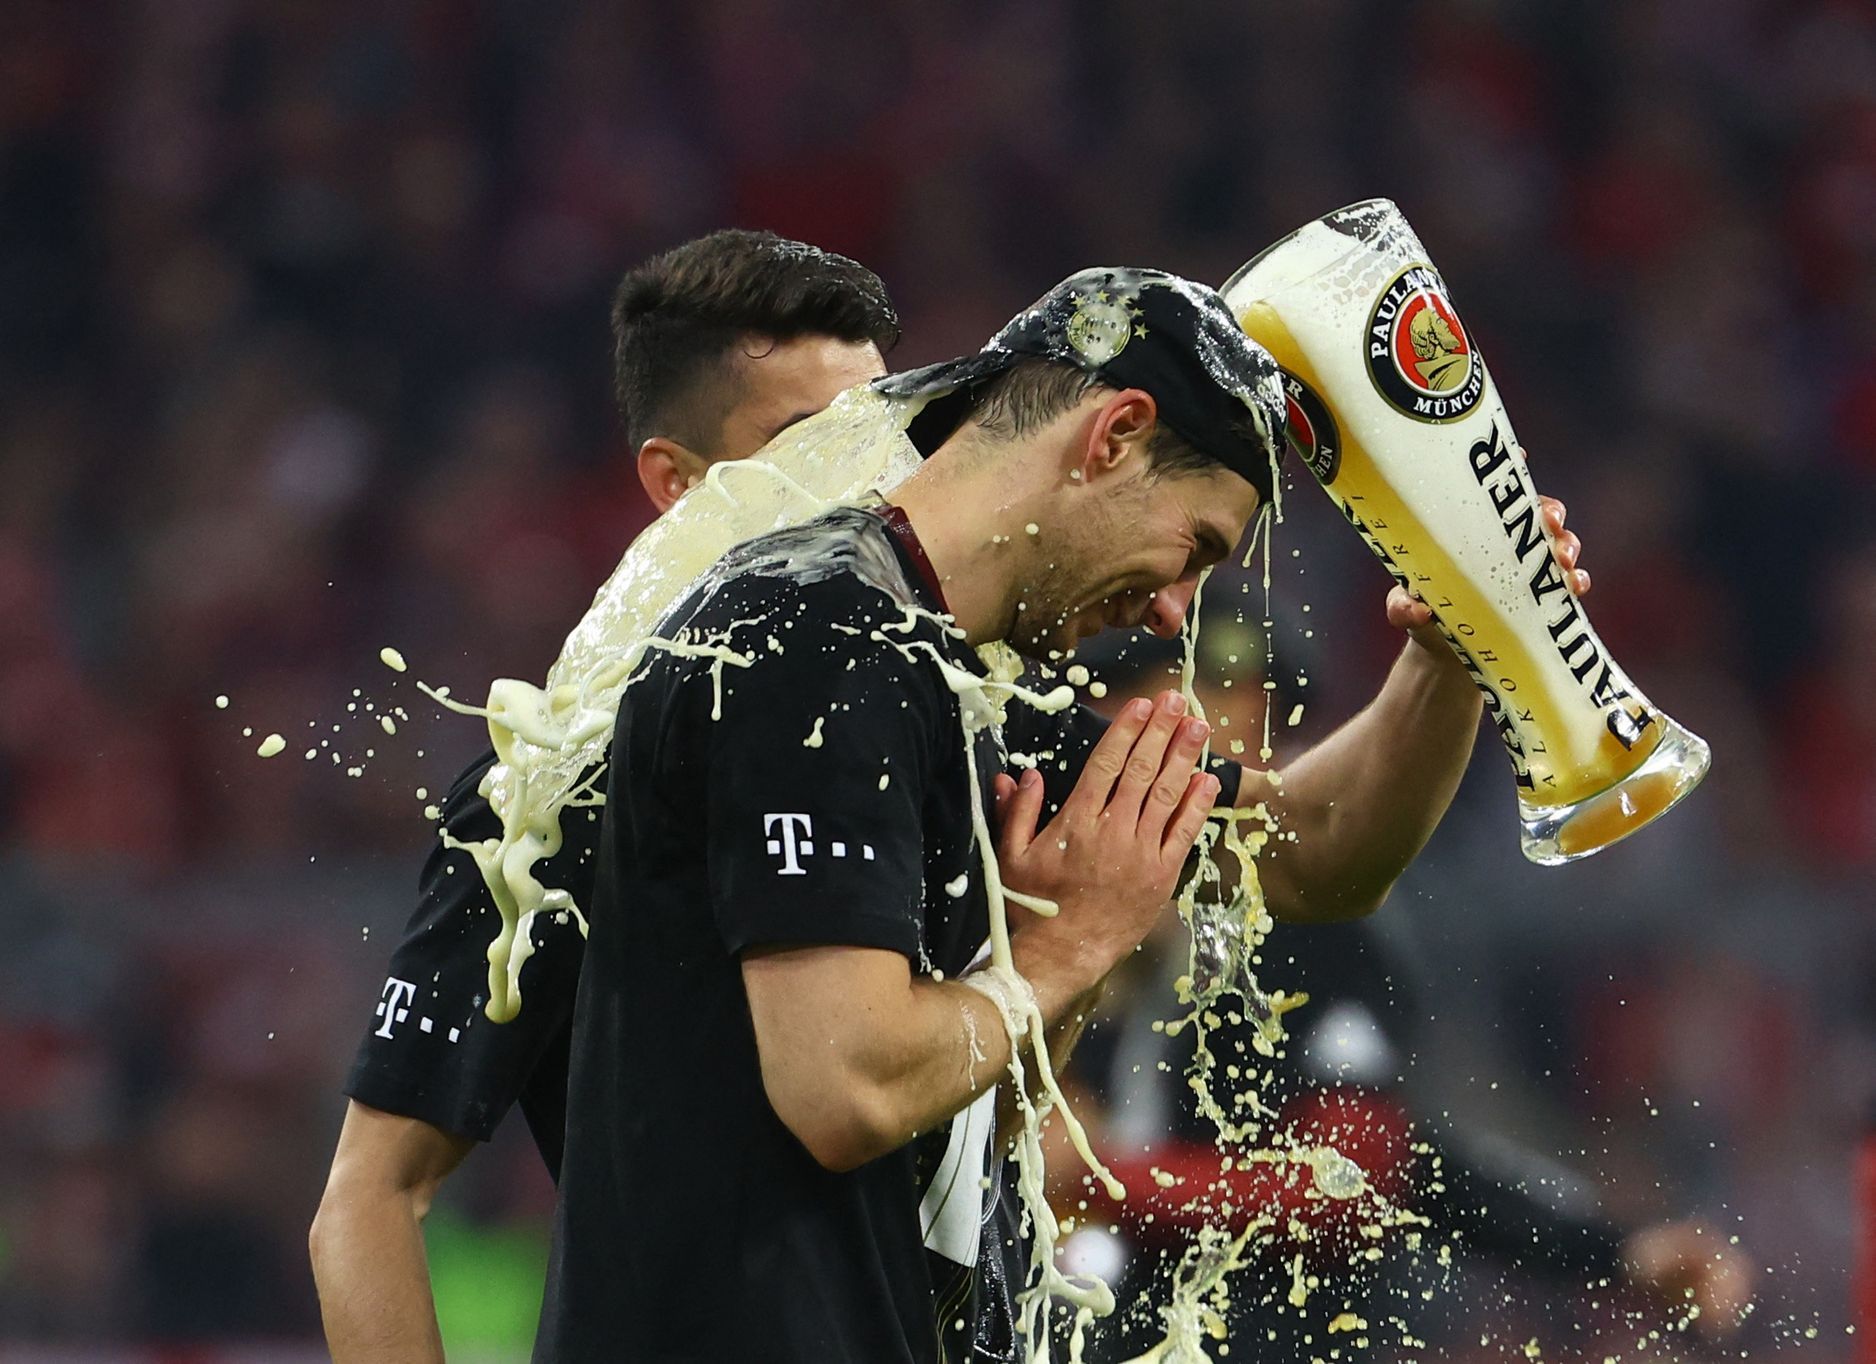 Bayern schlägt Dortmund zu Hause und feiert Titel, Schick schlug schnelle Hacken